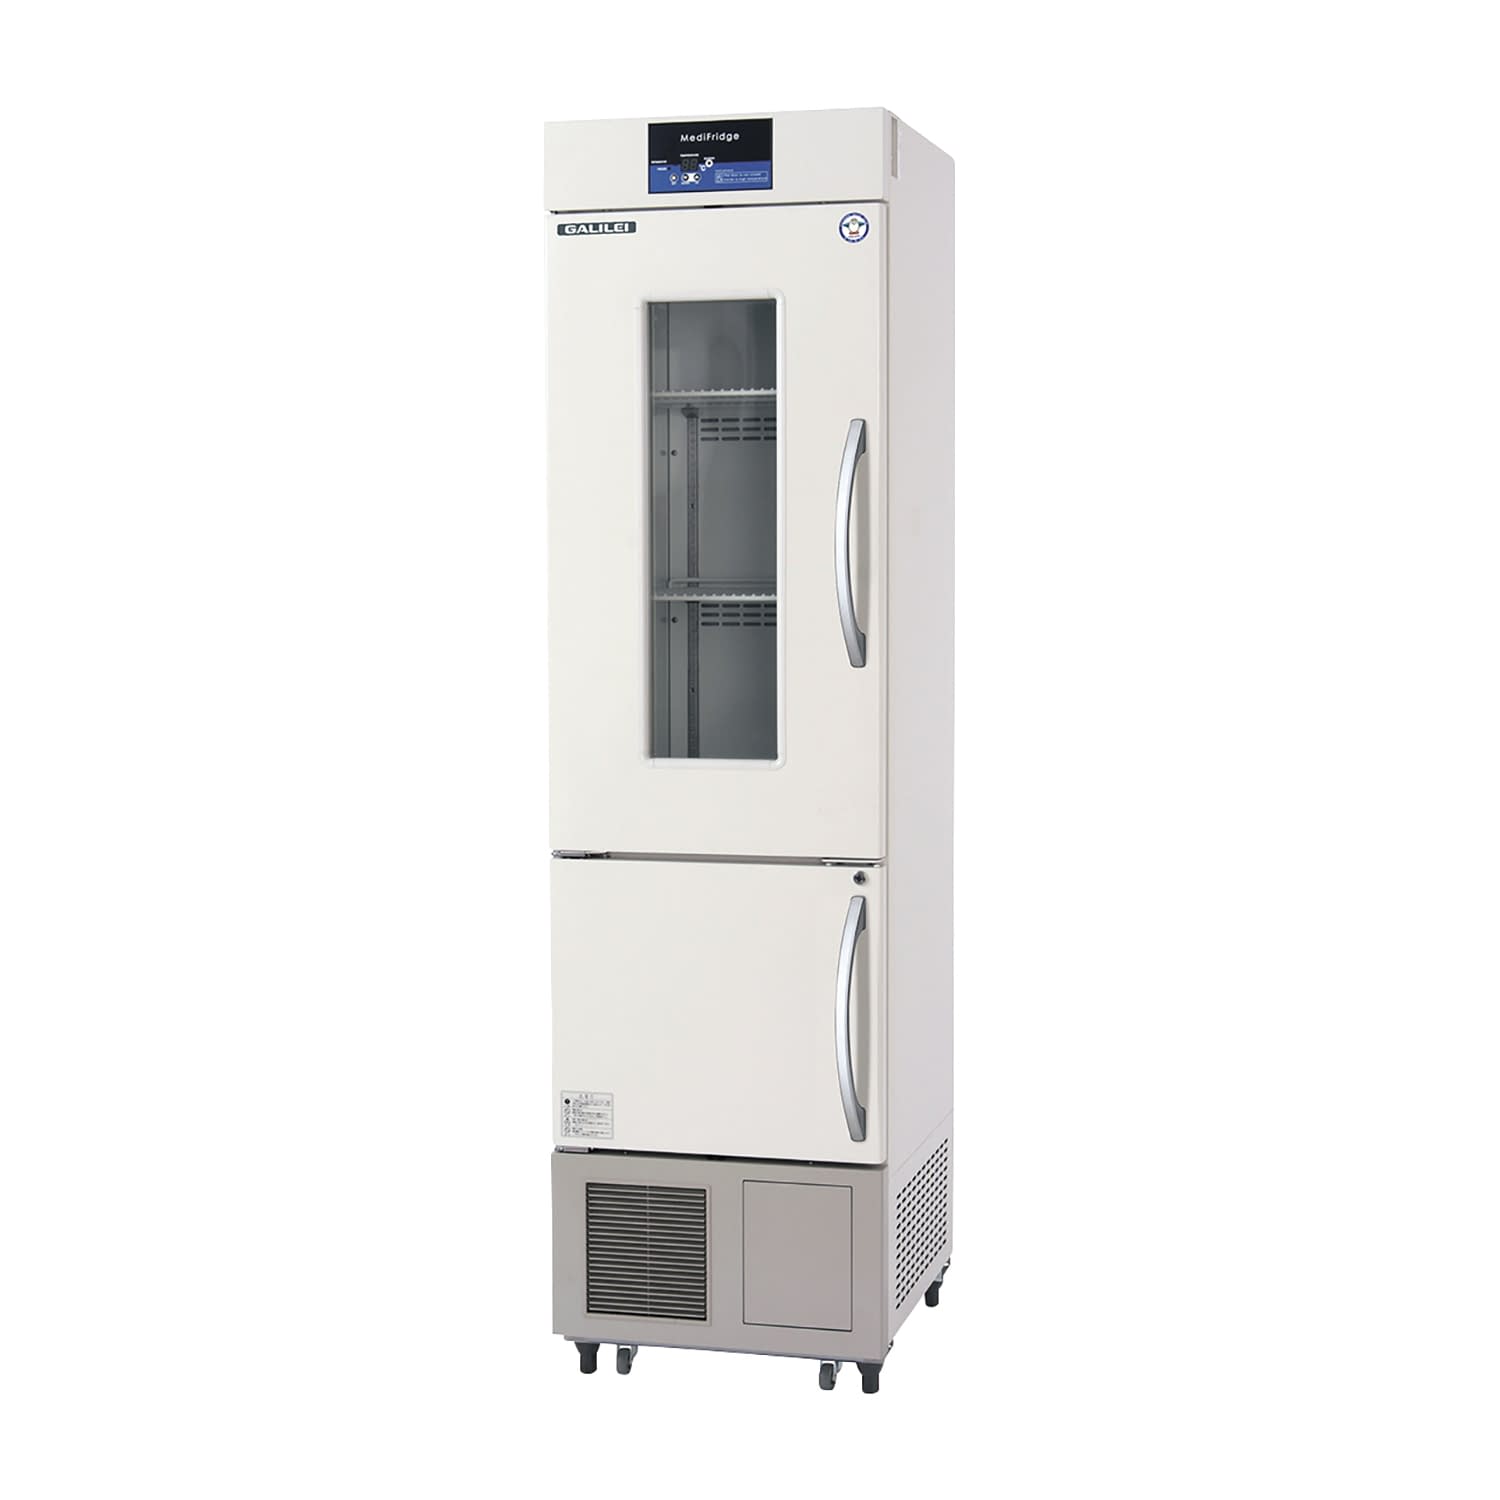 薬用冷凍冷蔵庫 FMS-F305GX(113／315L) 1台 フクシマガリレイ アイボリー(標準色) カラーオレンジ25-5515-0104 保冷庫 検査室 薬用保冷庫